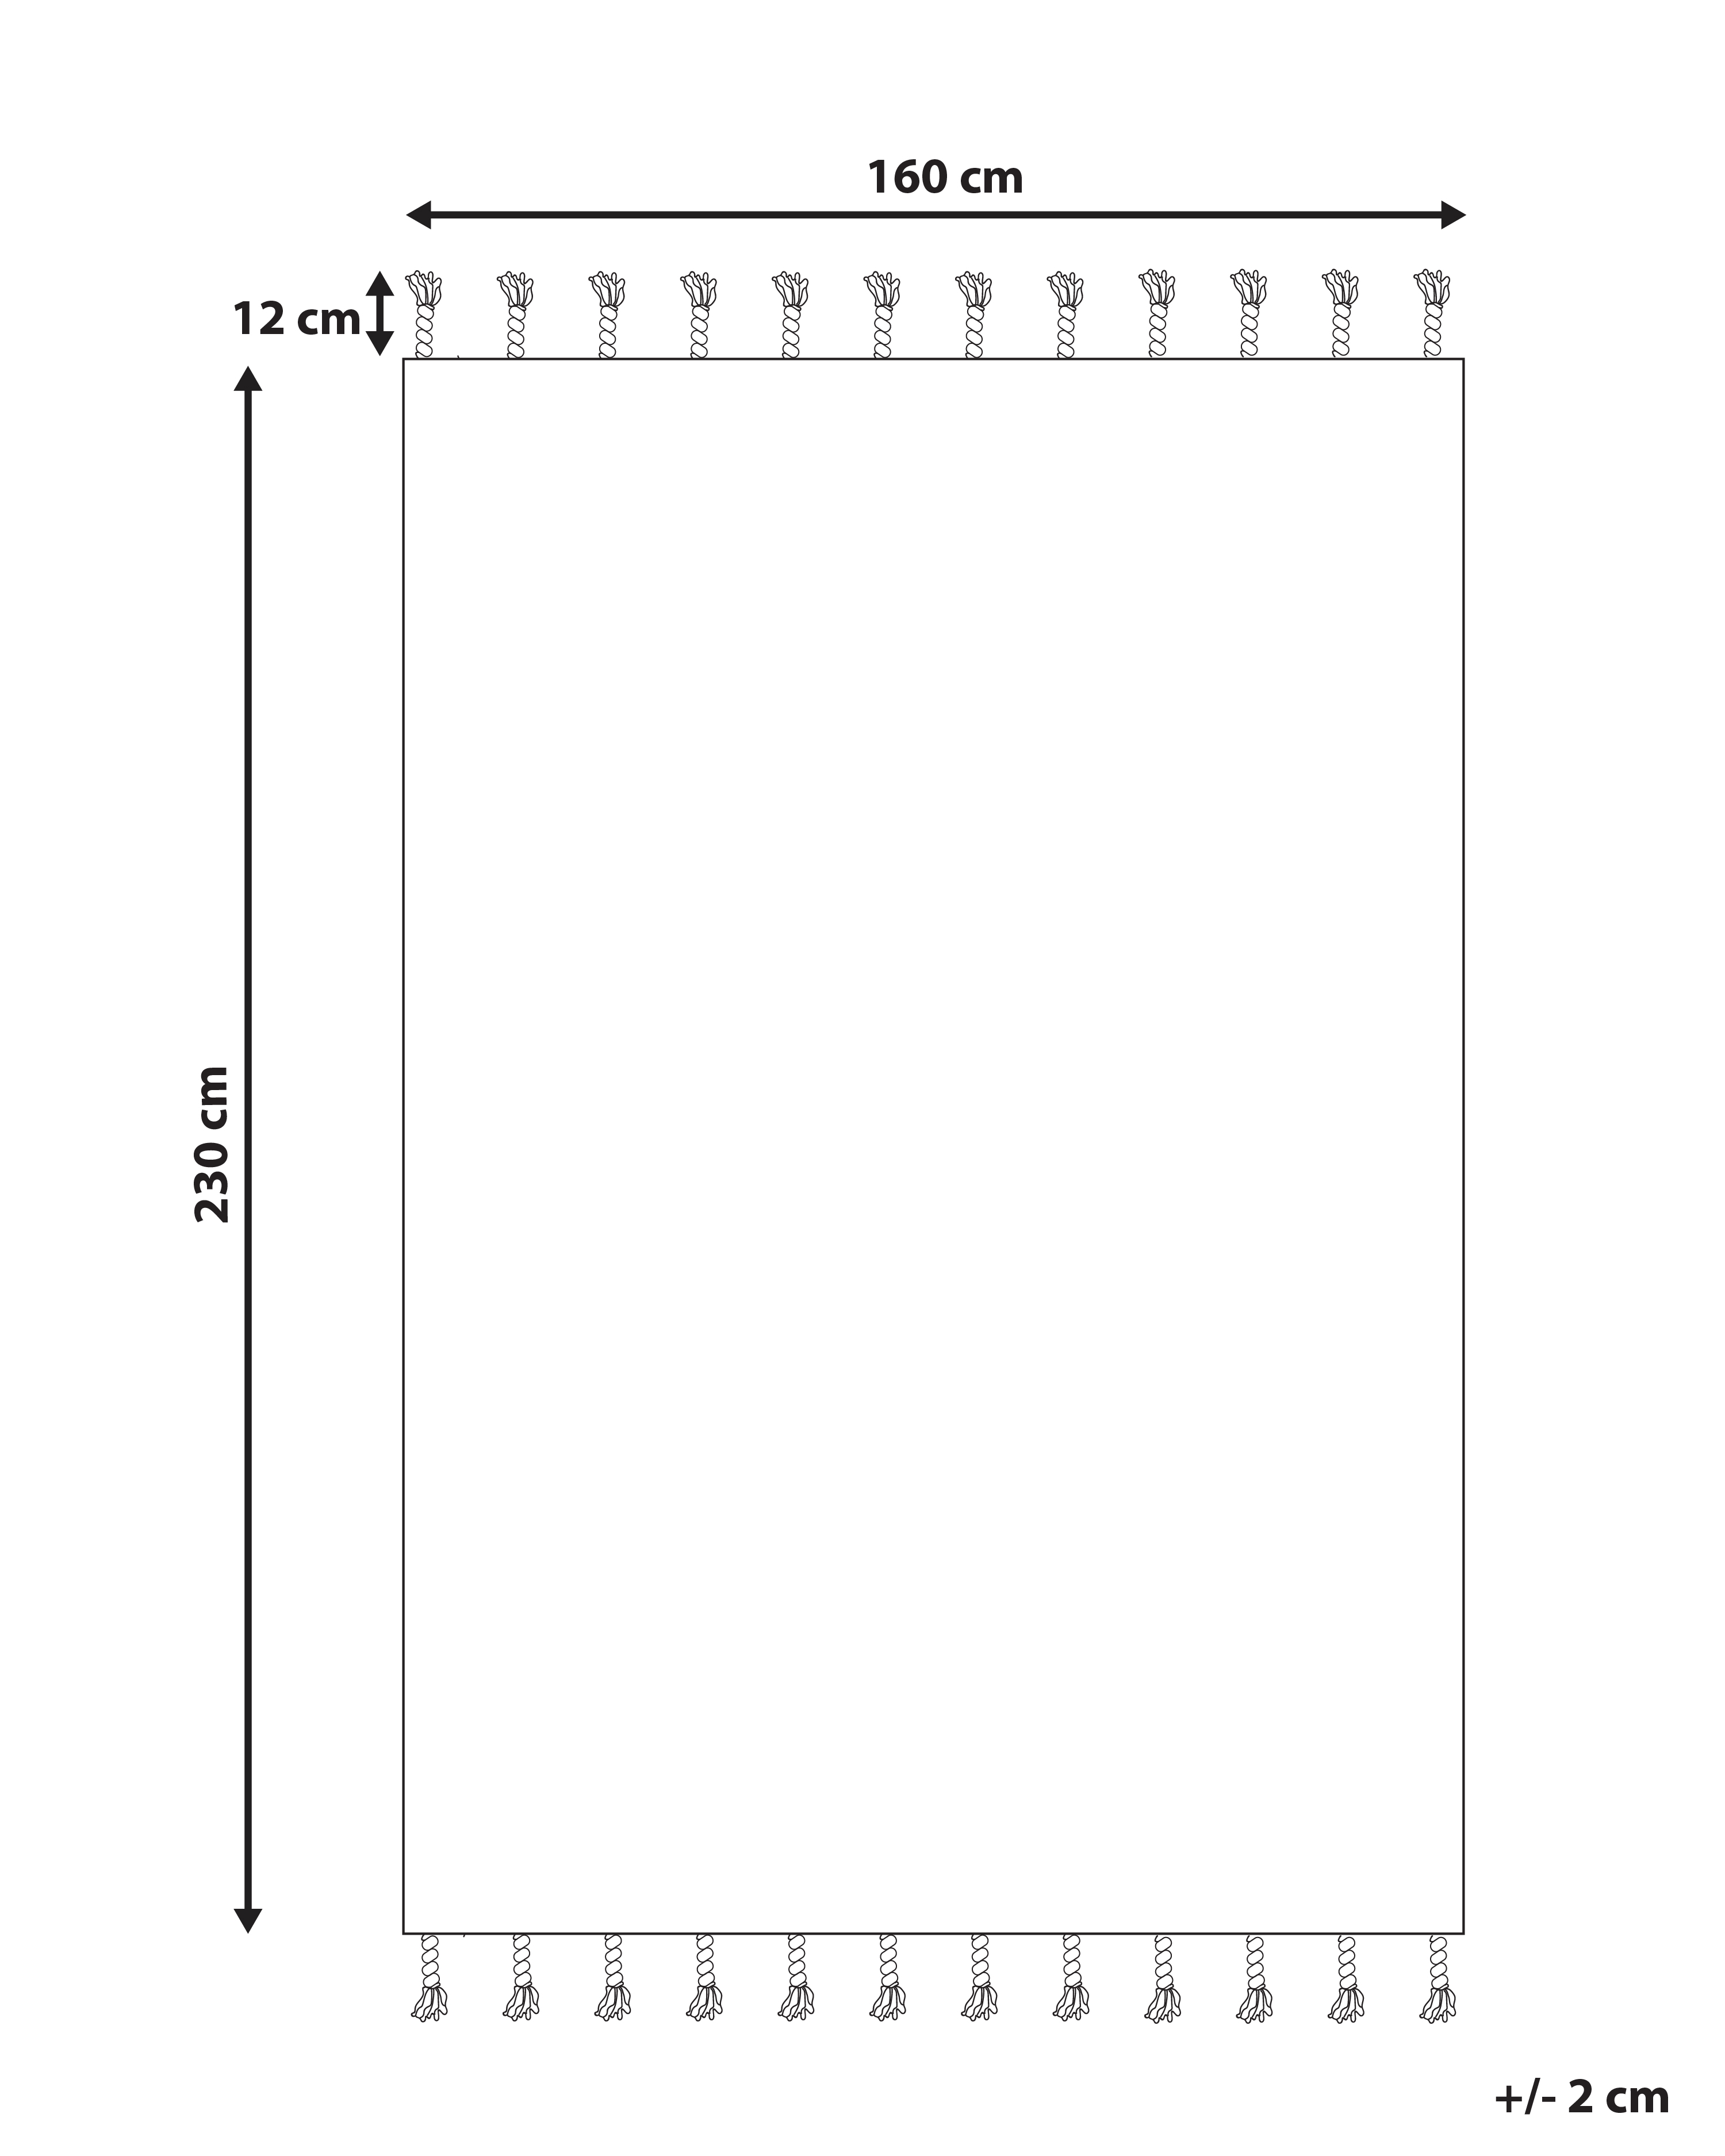 Outdoor Teppich cremeweiß / grau 160 x 230 cm Streifenmuster Kurzflor BADEMLI_846527